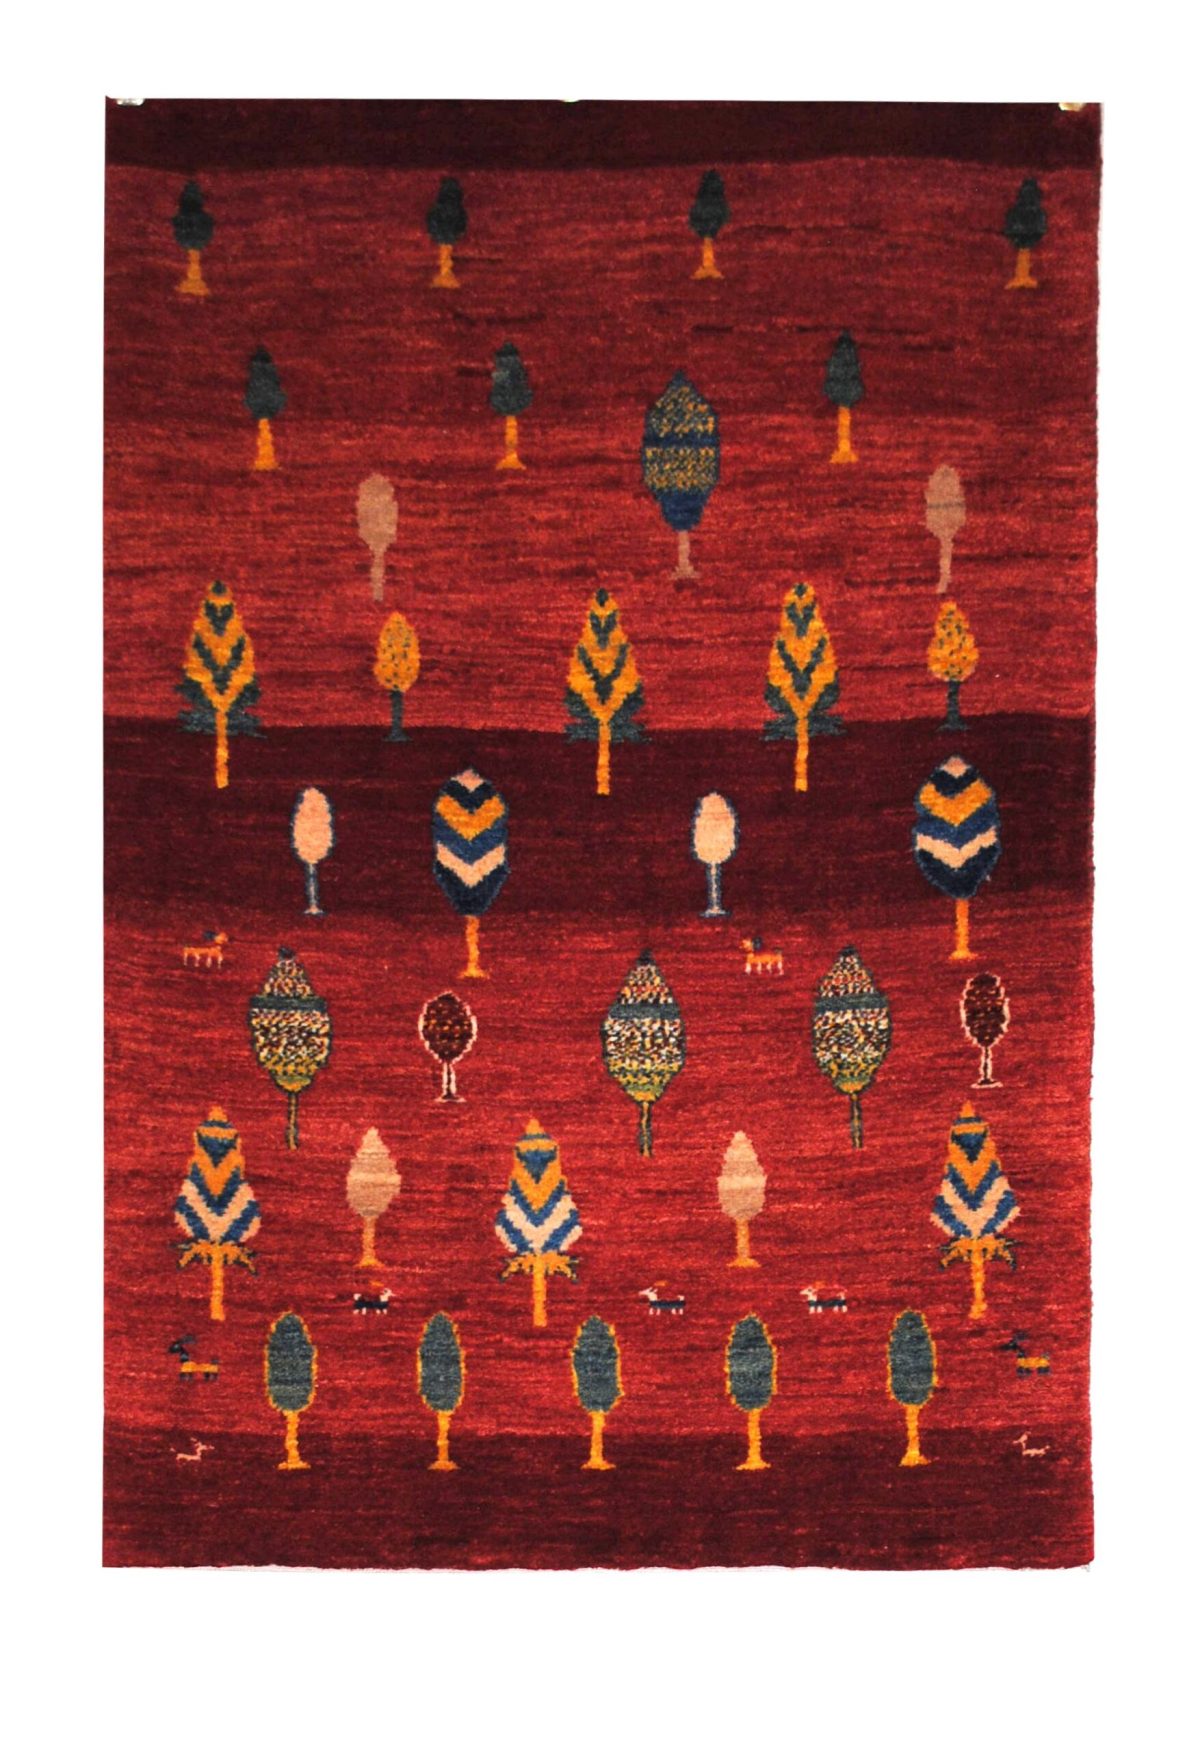 Persian Gabbeh rug 2' 5" x 4' Red Wool Handmade Area Rug - Shabahang Royal Carpet